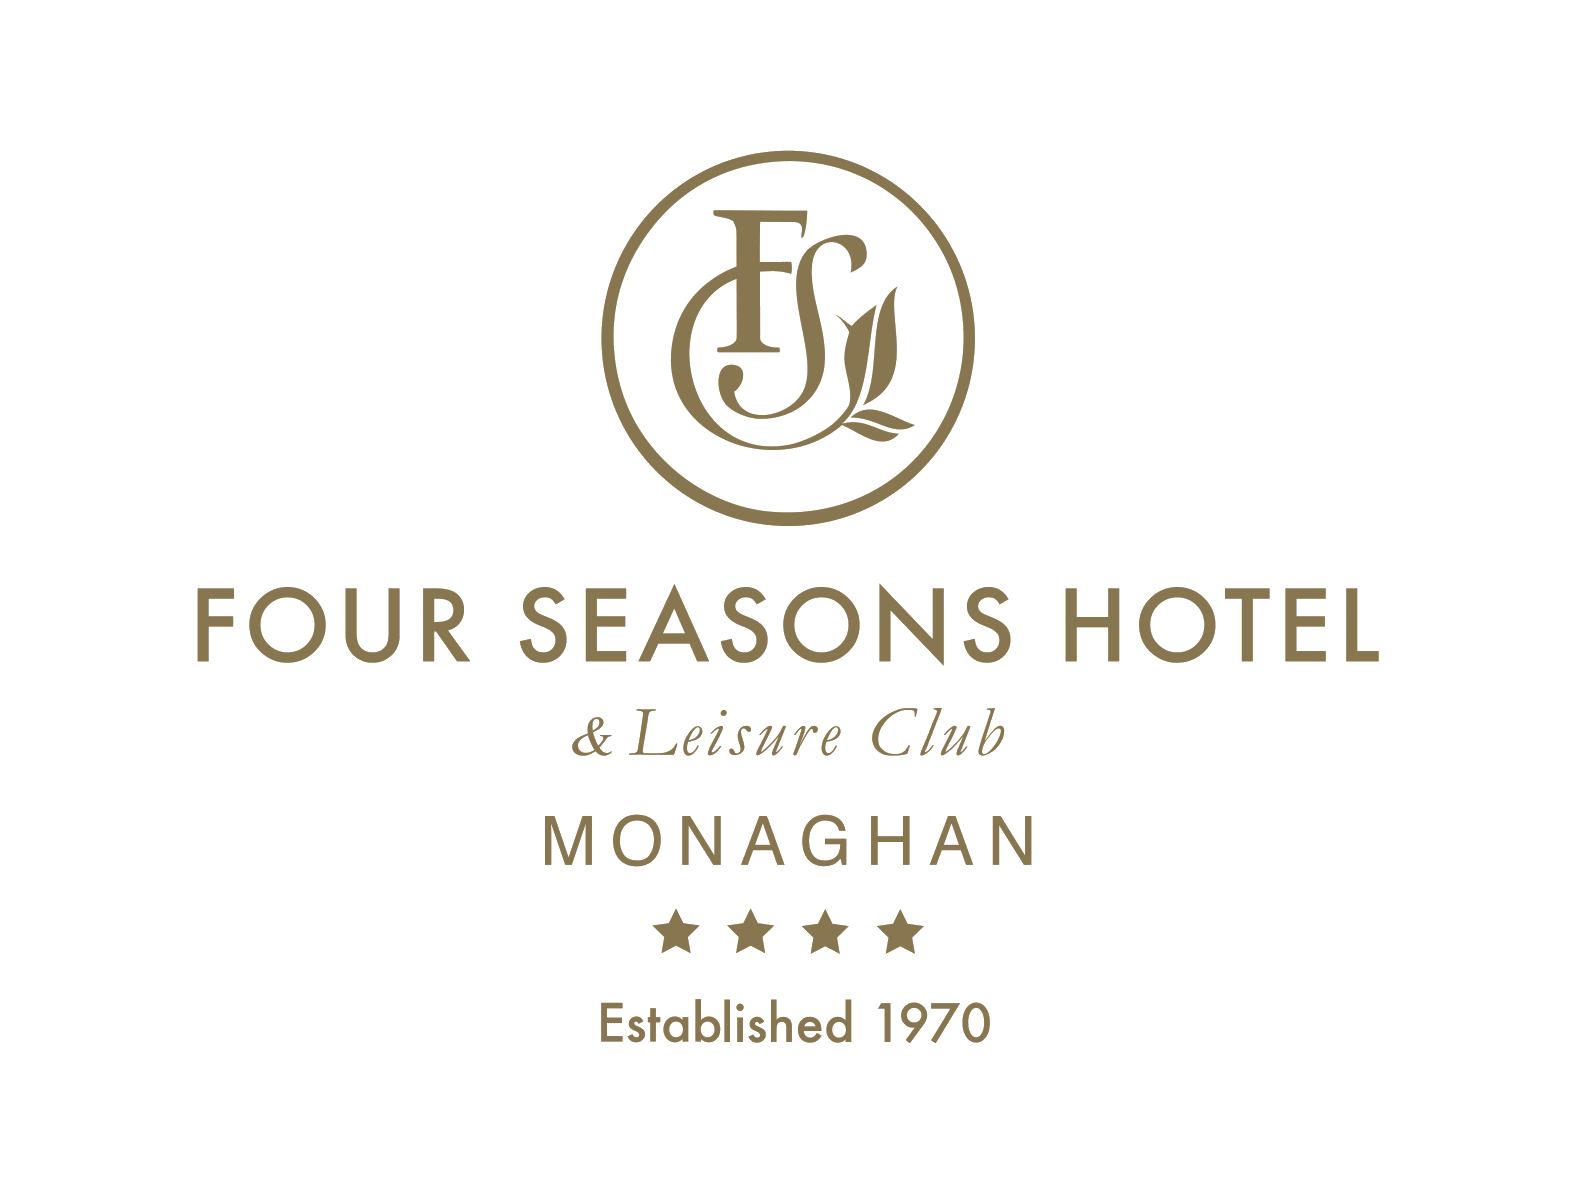 Hôtel Four Seasons et club de loisirs Monaghan